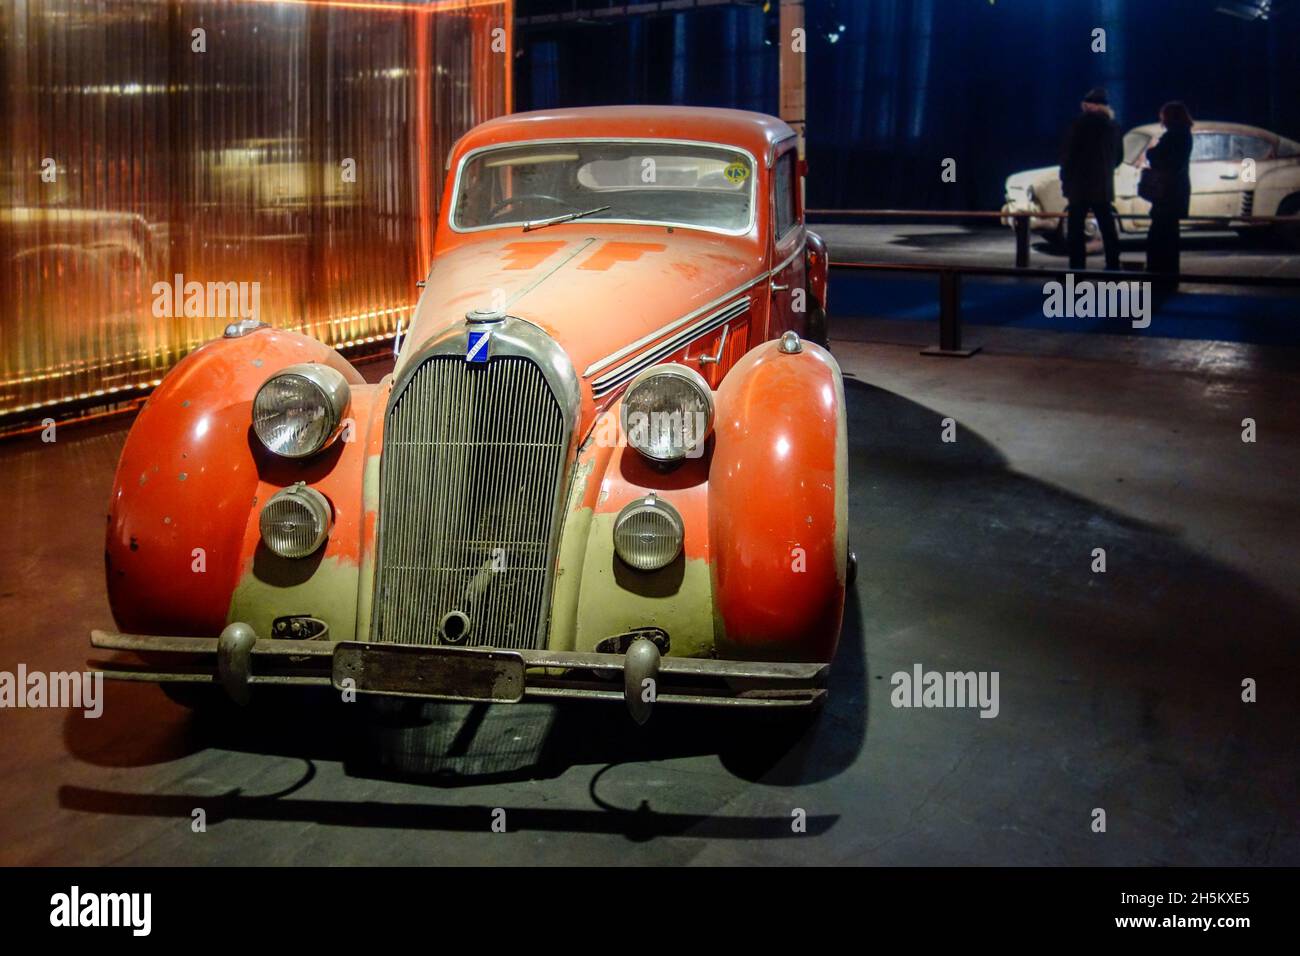 Rusty et Dusty 1947 Talbot Lago-Record Type T26, français classique Executive car / oldtimer, prêt à être restauré dans le garage Banque D'Images